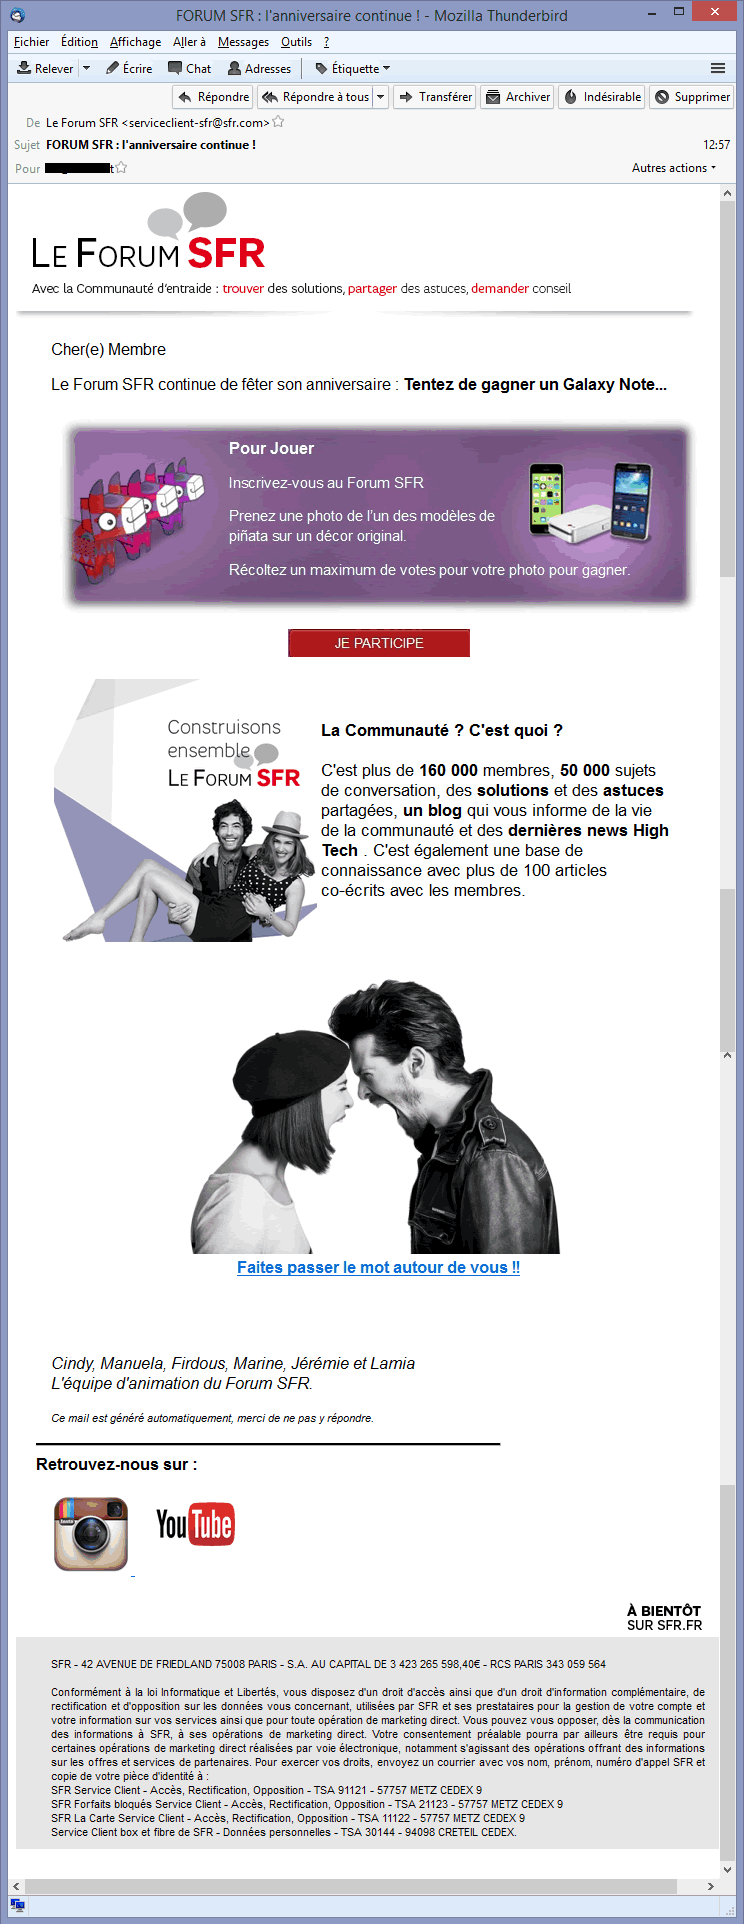 Gamification par email de SFR